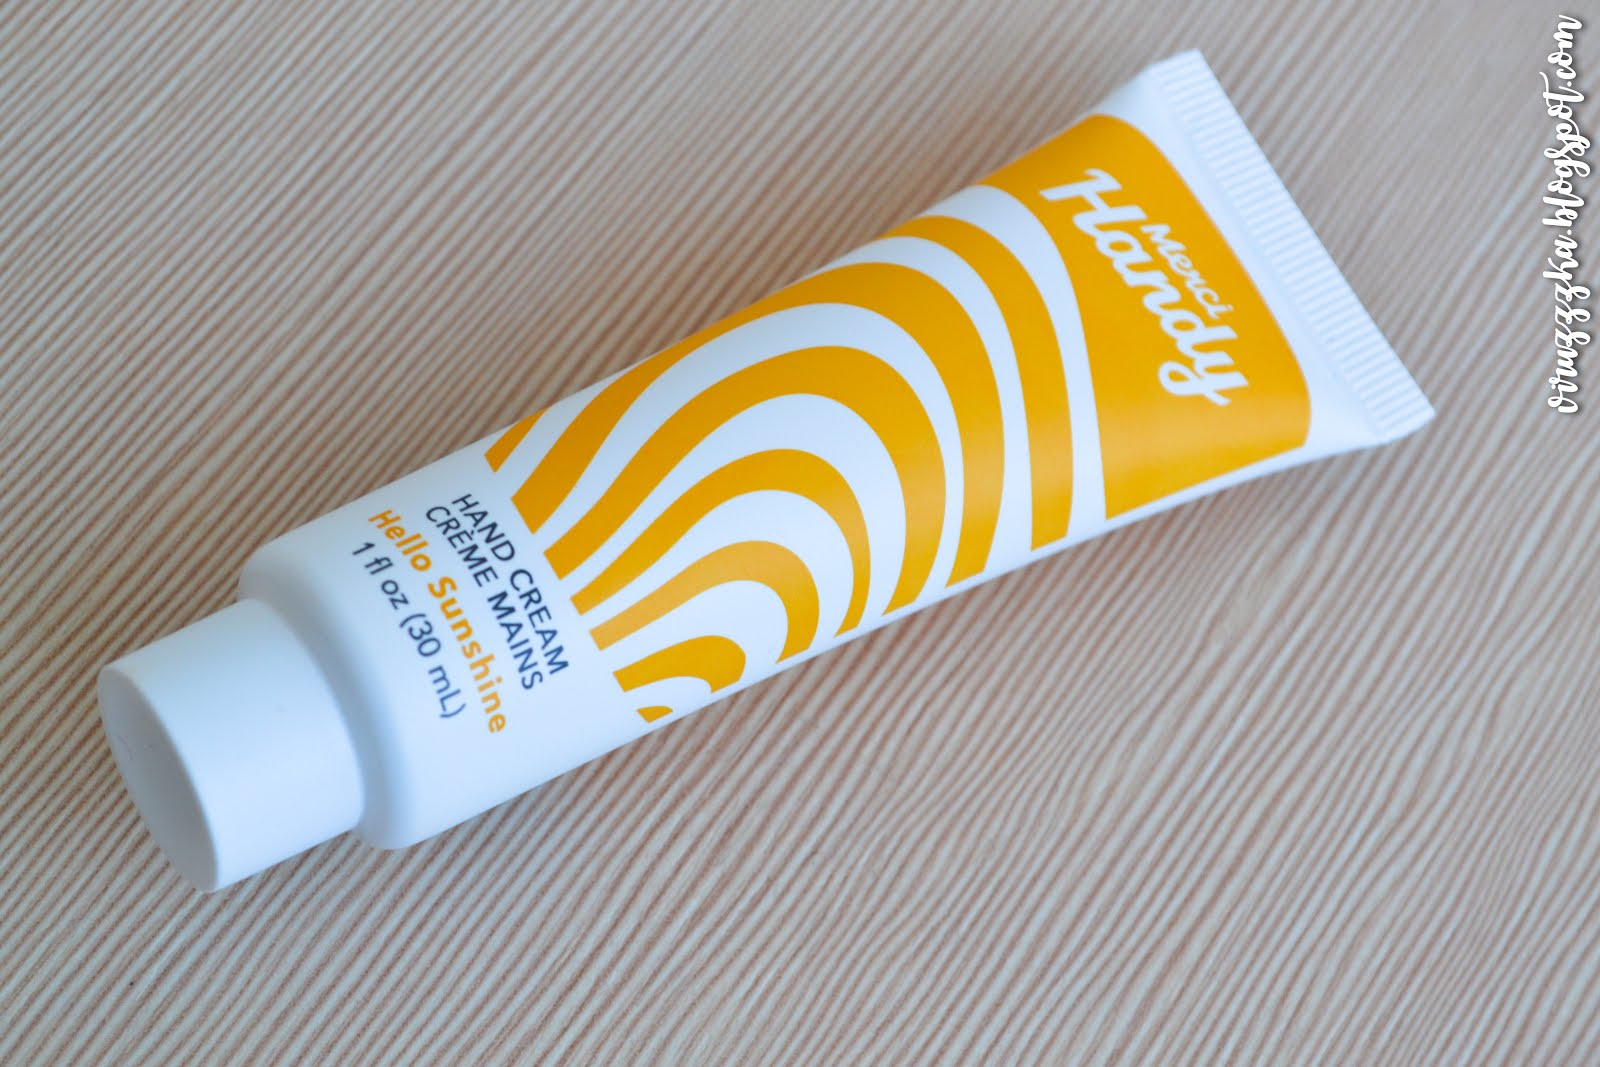 MERCI HANDY Hand Cream Hello Sunshine Review